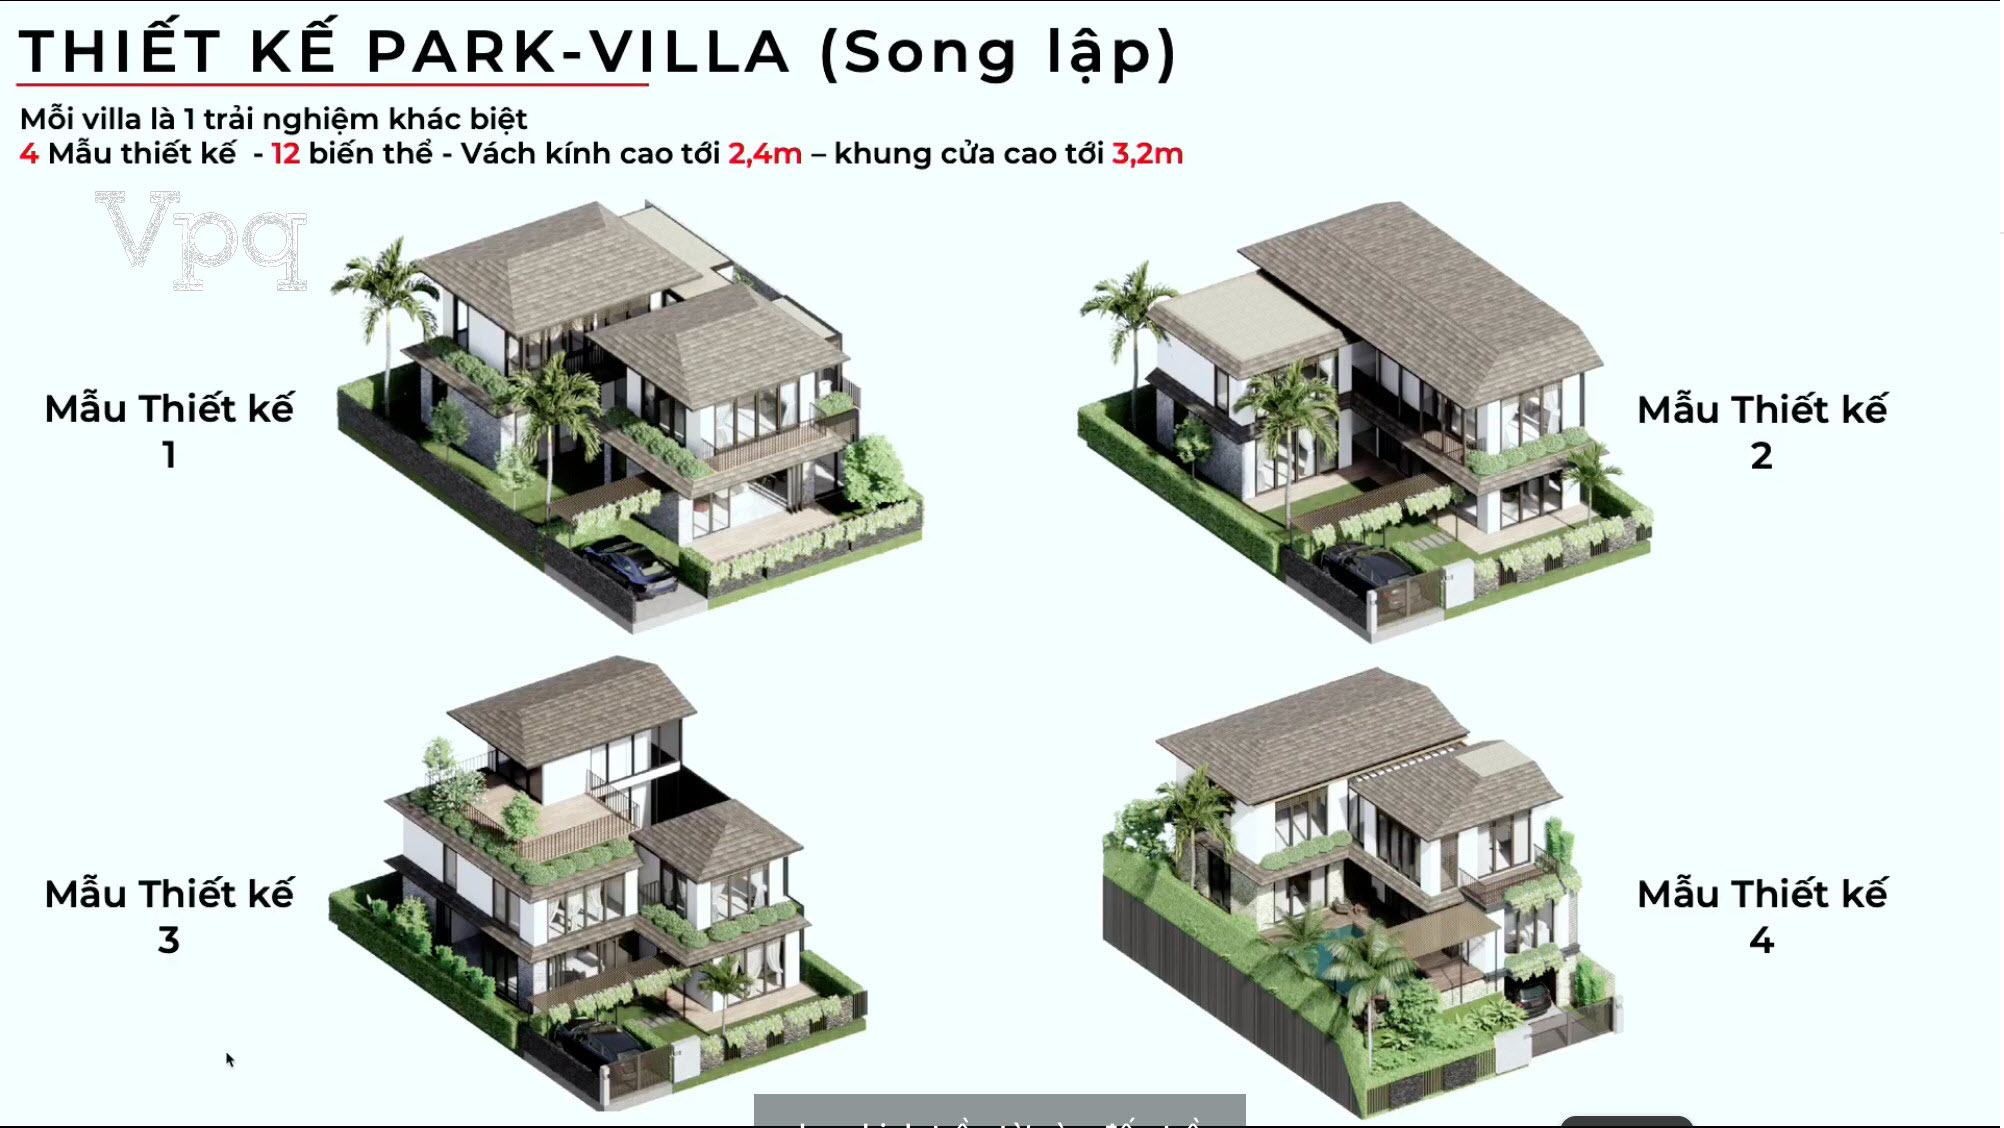 4 mẫu thiết kế Makaio Park Villa